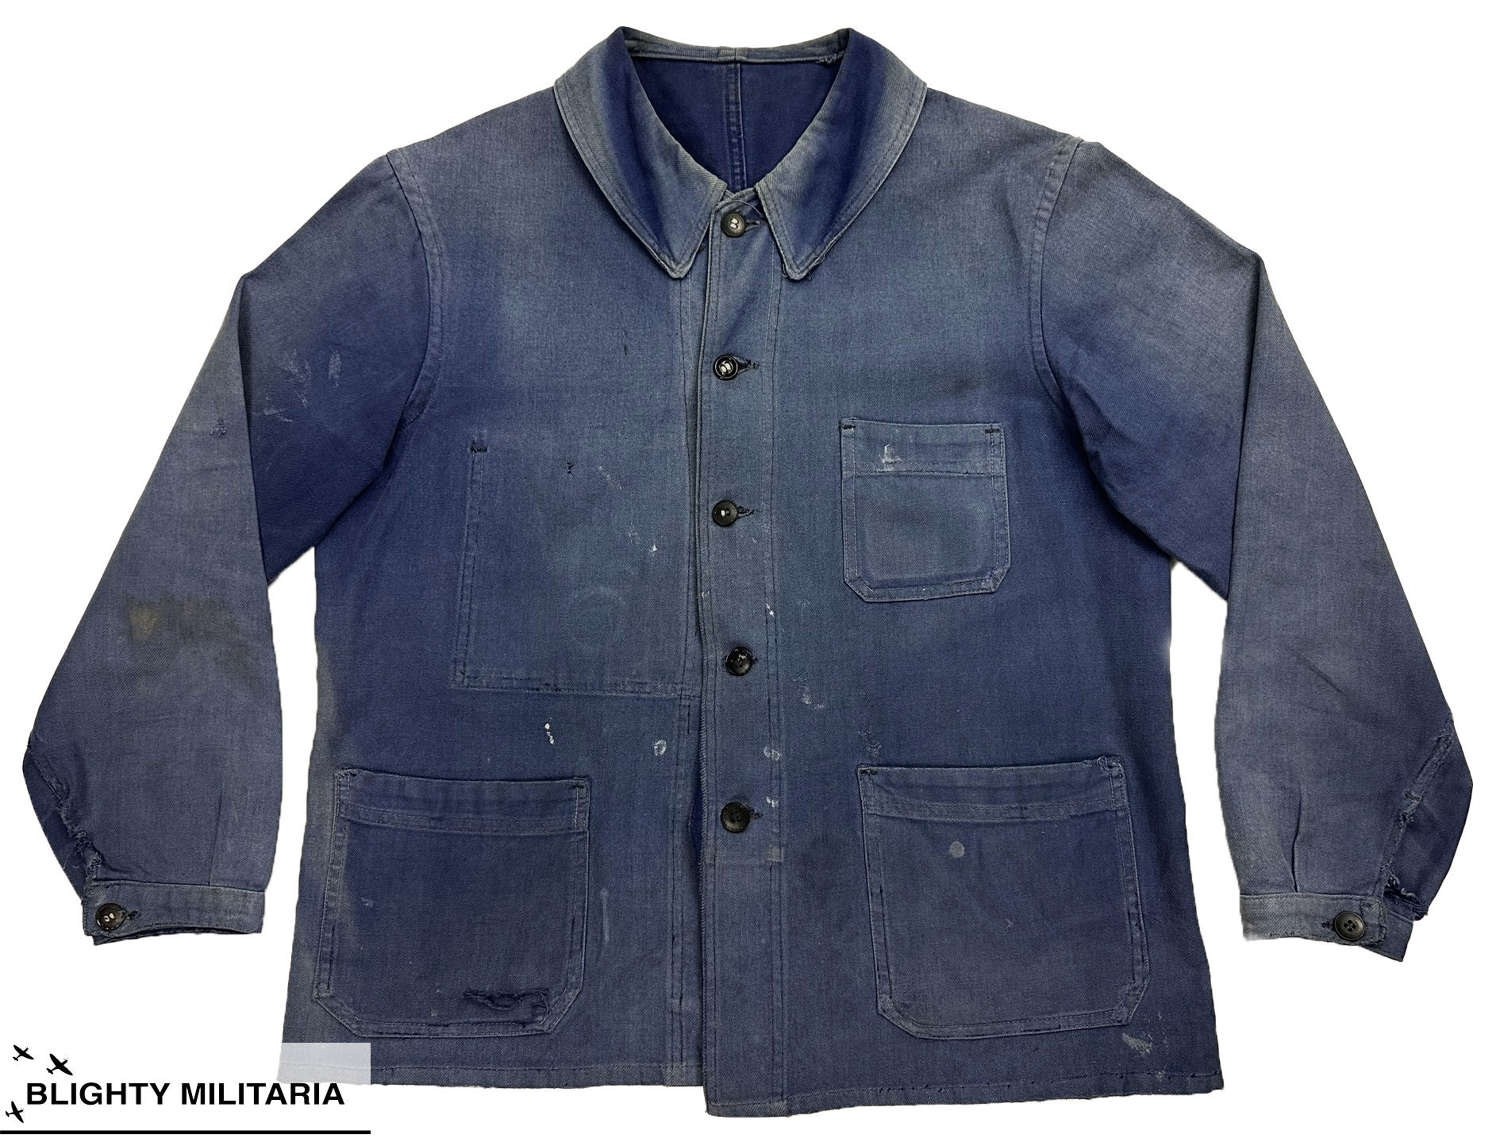 Original 1940s French Workwear Chore Jacket - Size 40